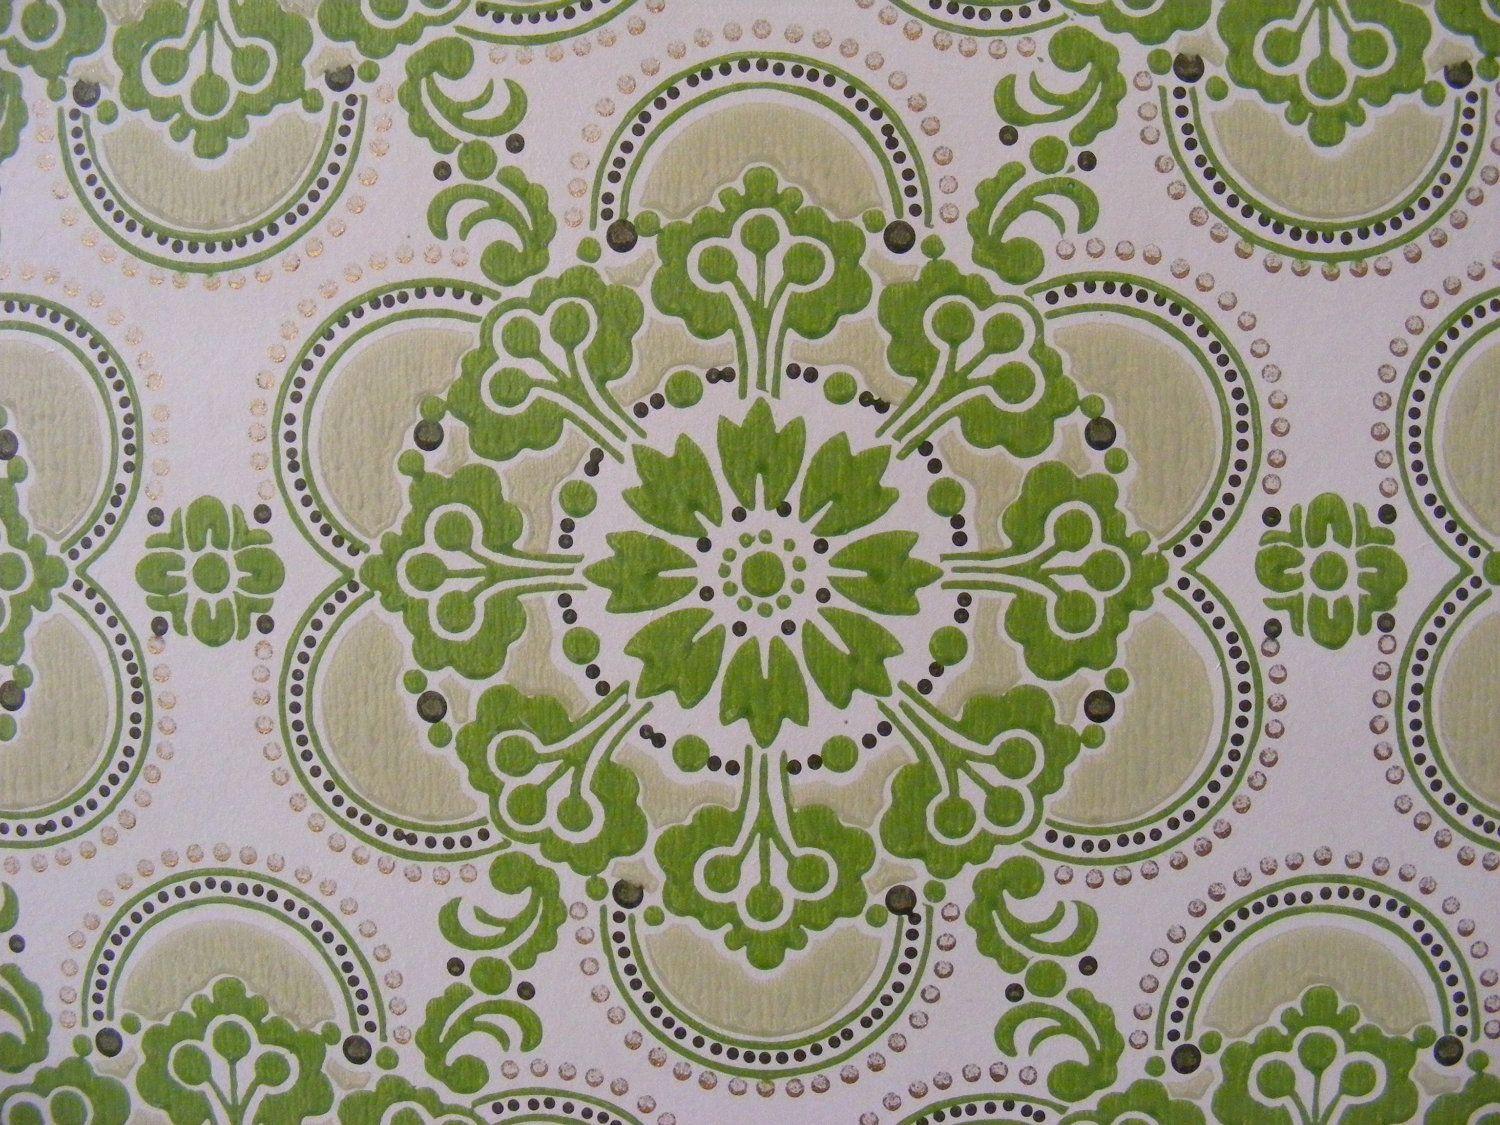 Green vintage wallpaper retro pattern groovy flower shapes mod pop